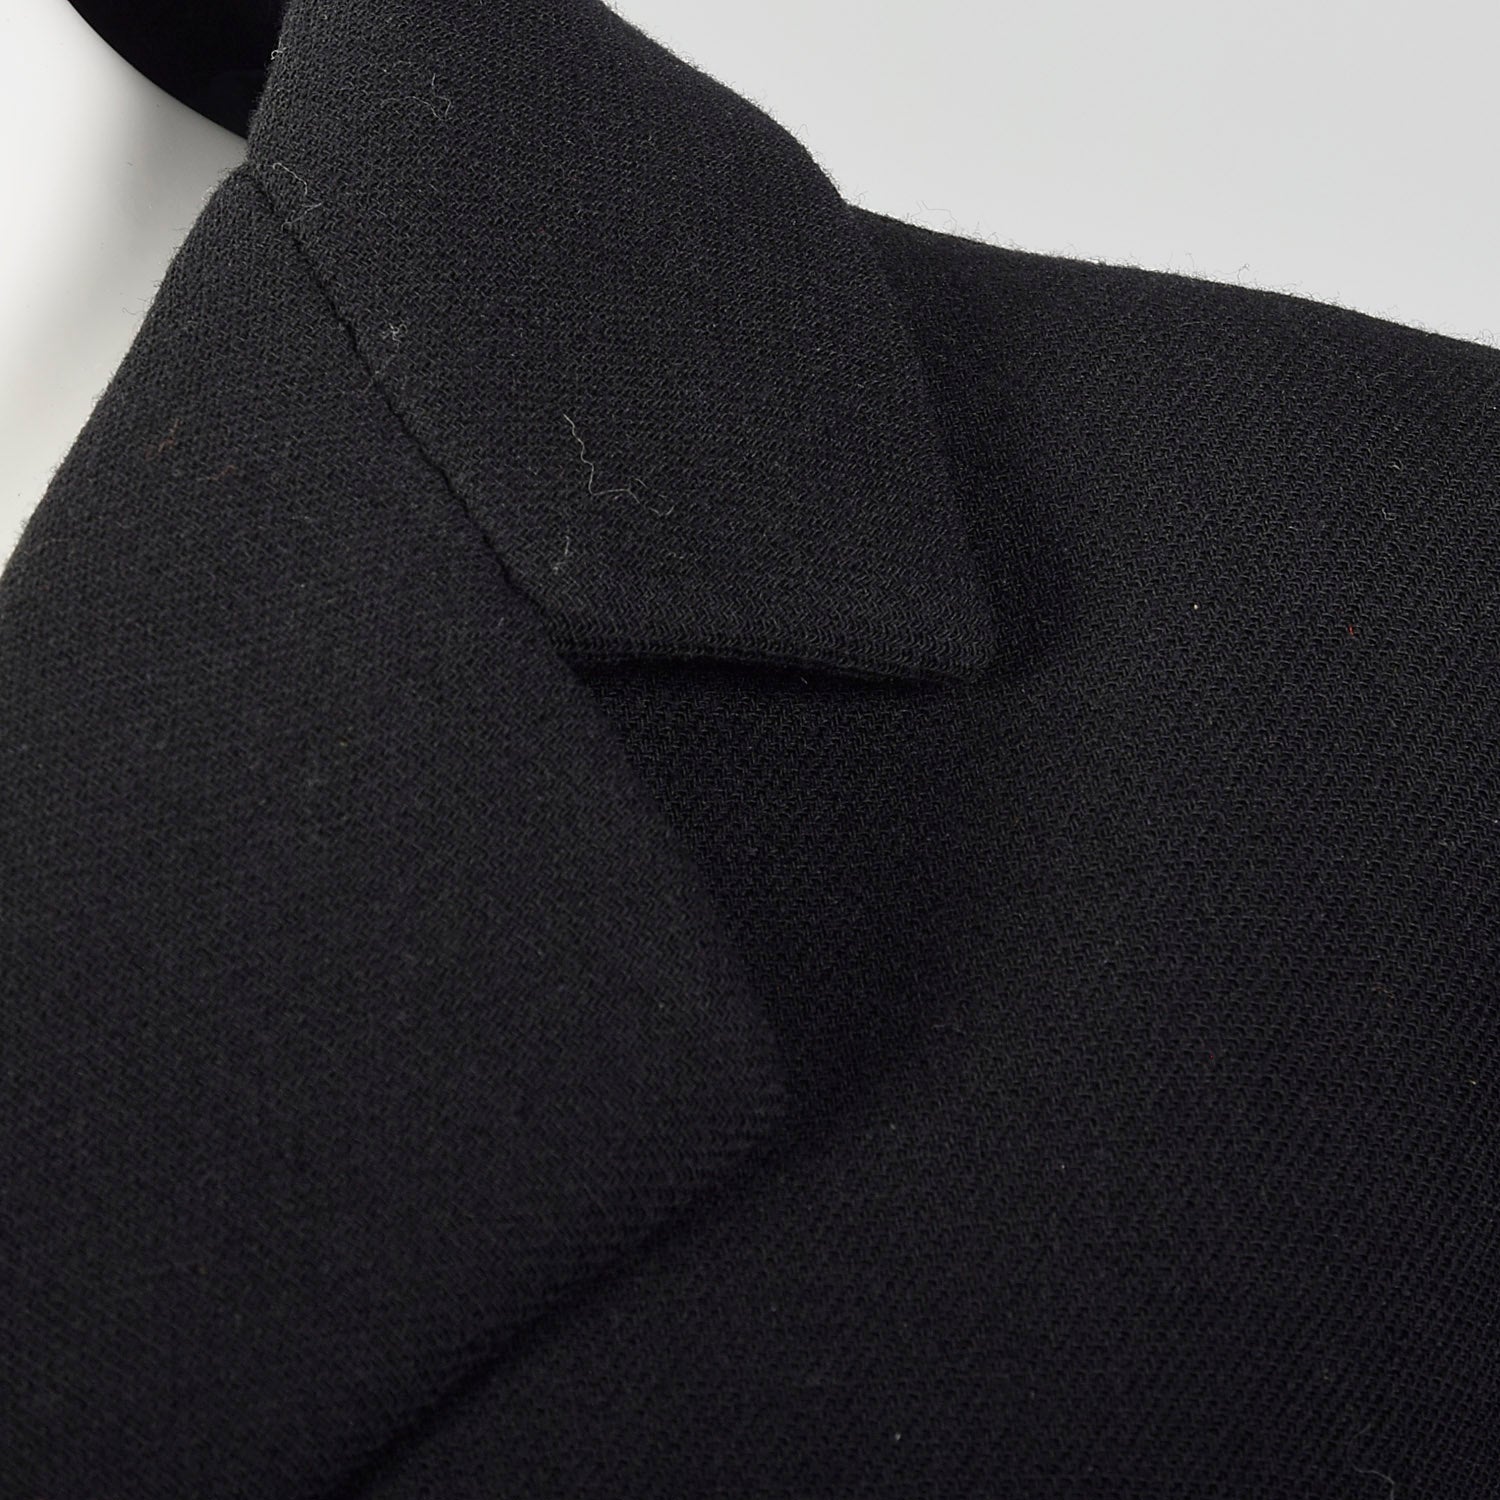 XXS 1960s Black Blazer Style Coat